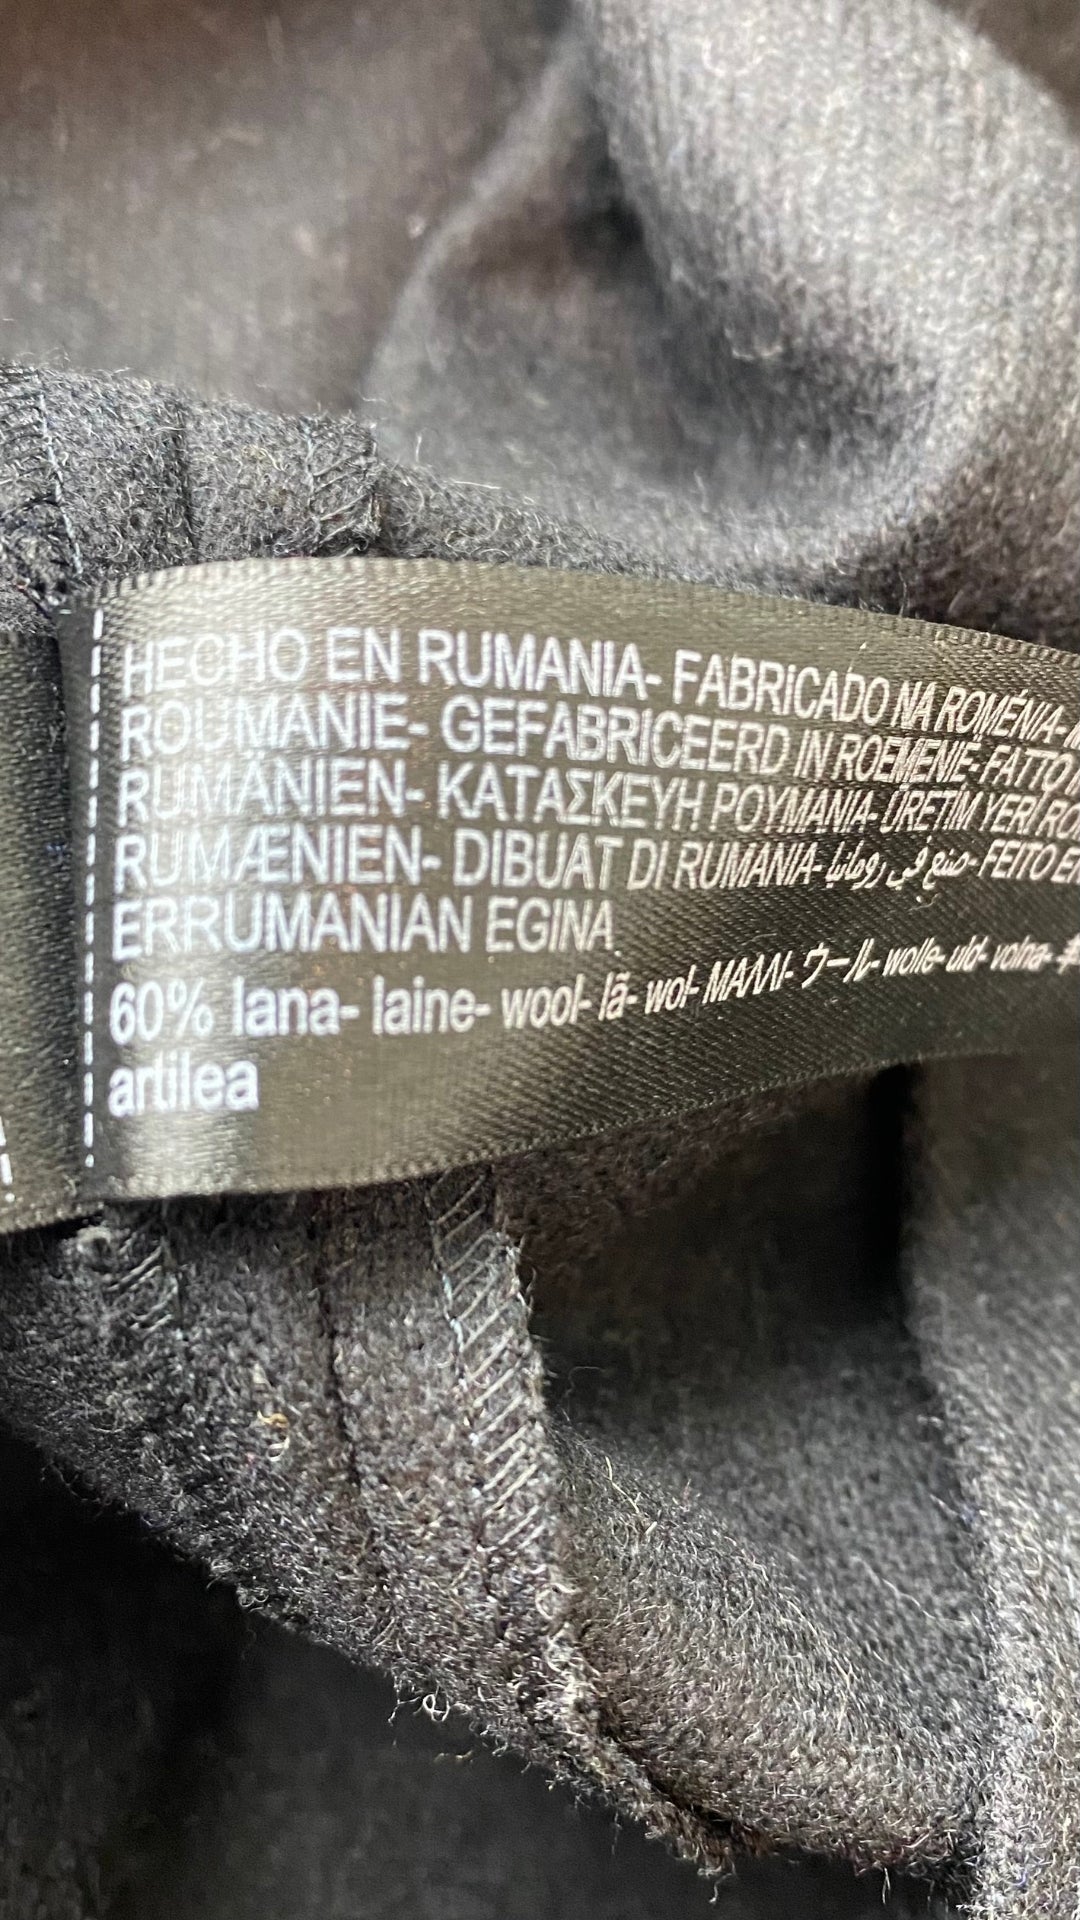 Jupe longue noire chiné en lainage Massimo Dutti, taille small. Vue de l'étiquette de composition.